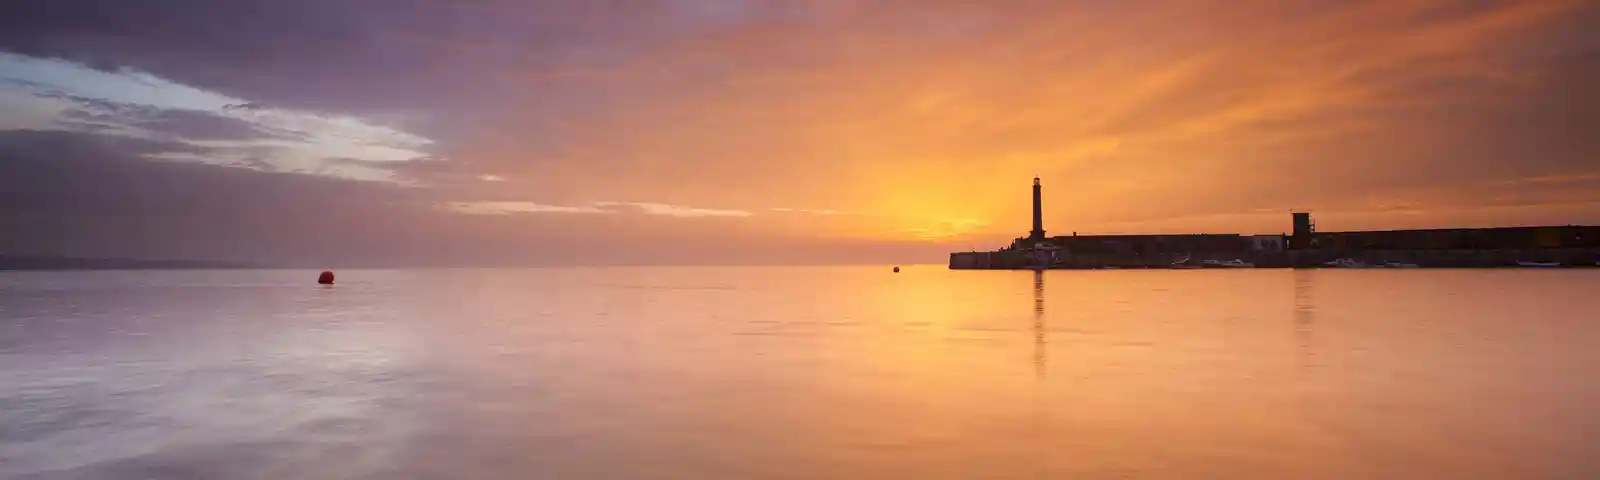 Margate Harbour Arm Sunset 3.jpg